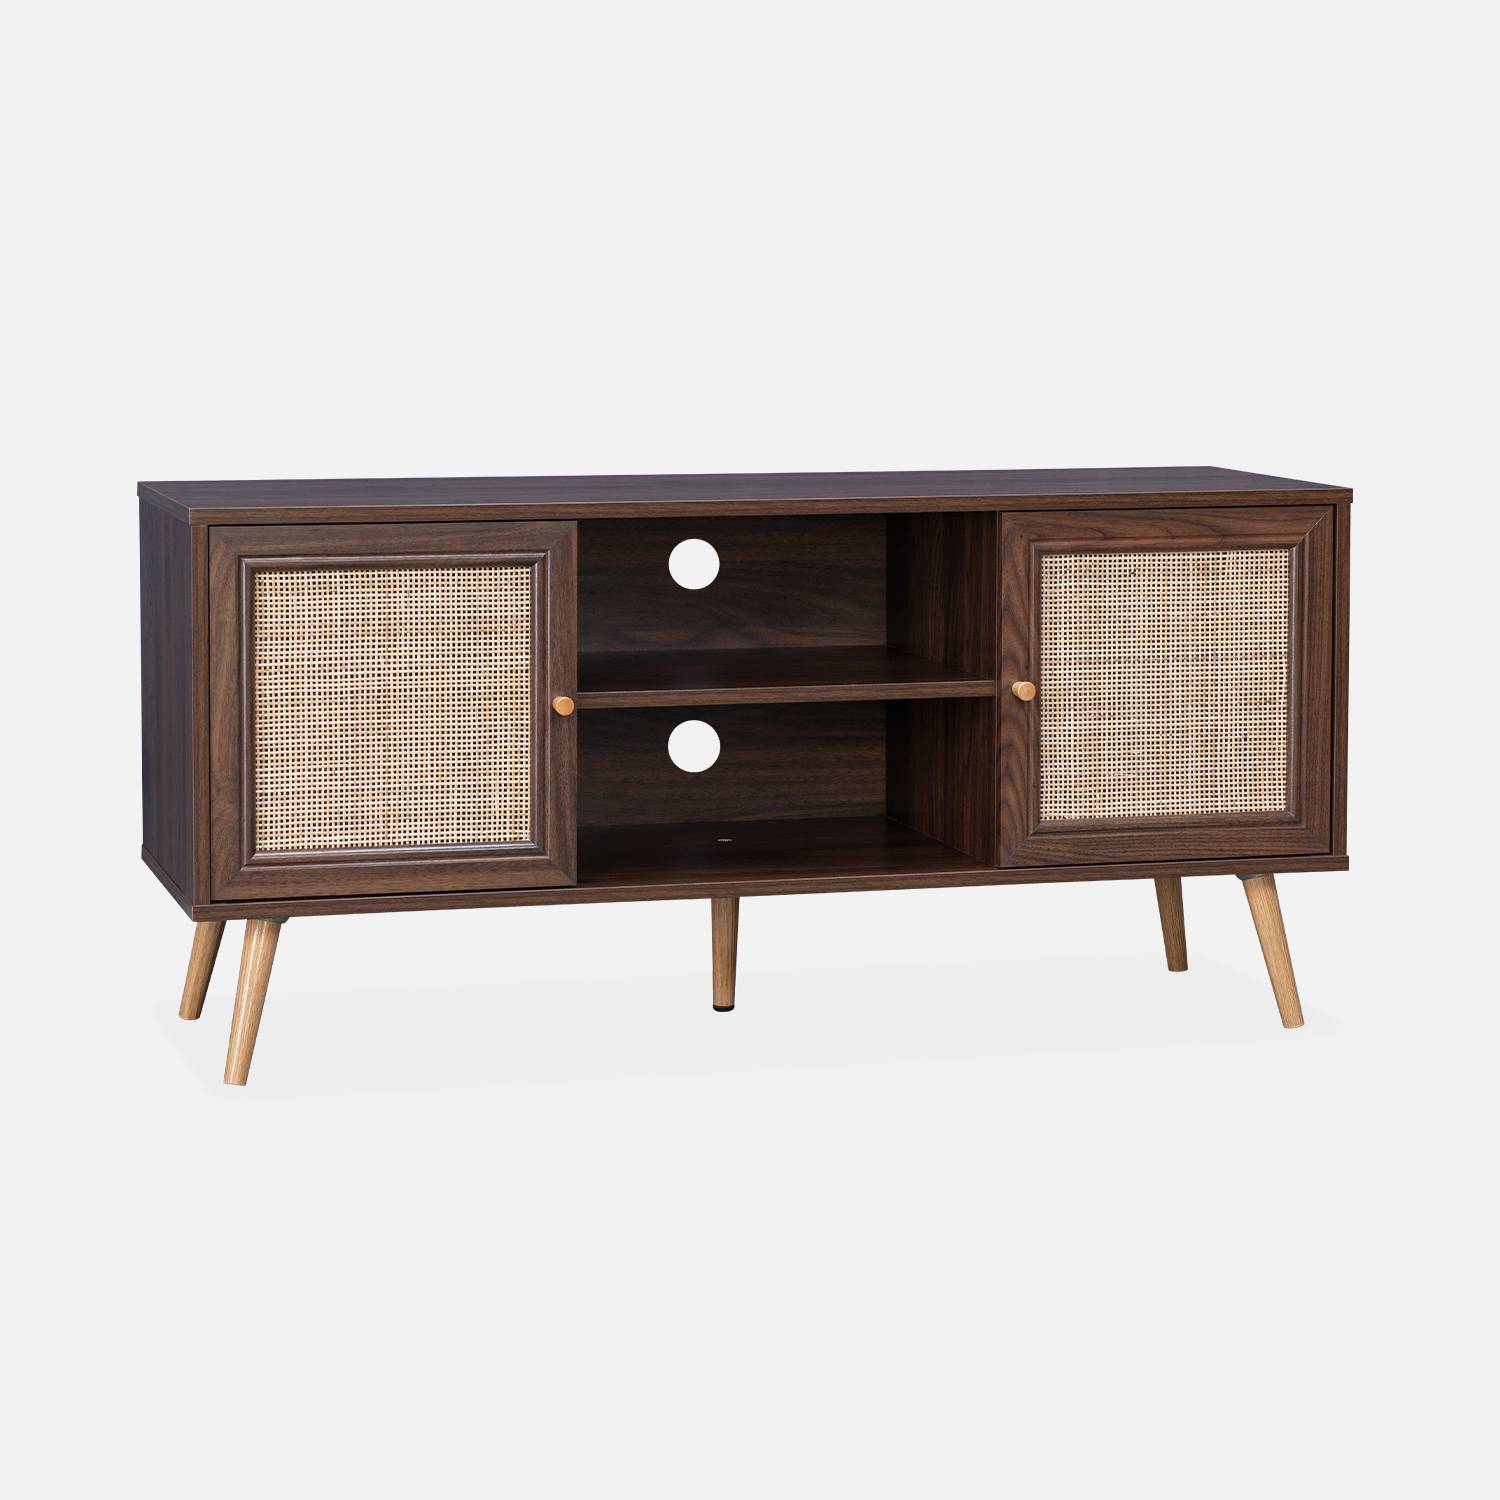 Scandi-style wood and cane rattan TV stand, 2 shelves, 2 doors, 120x39x56.5cm - Boheme - Dark wood,sweeek,Photo3